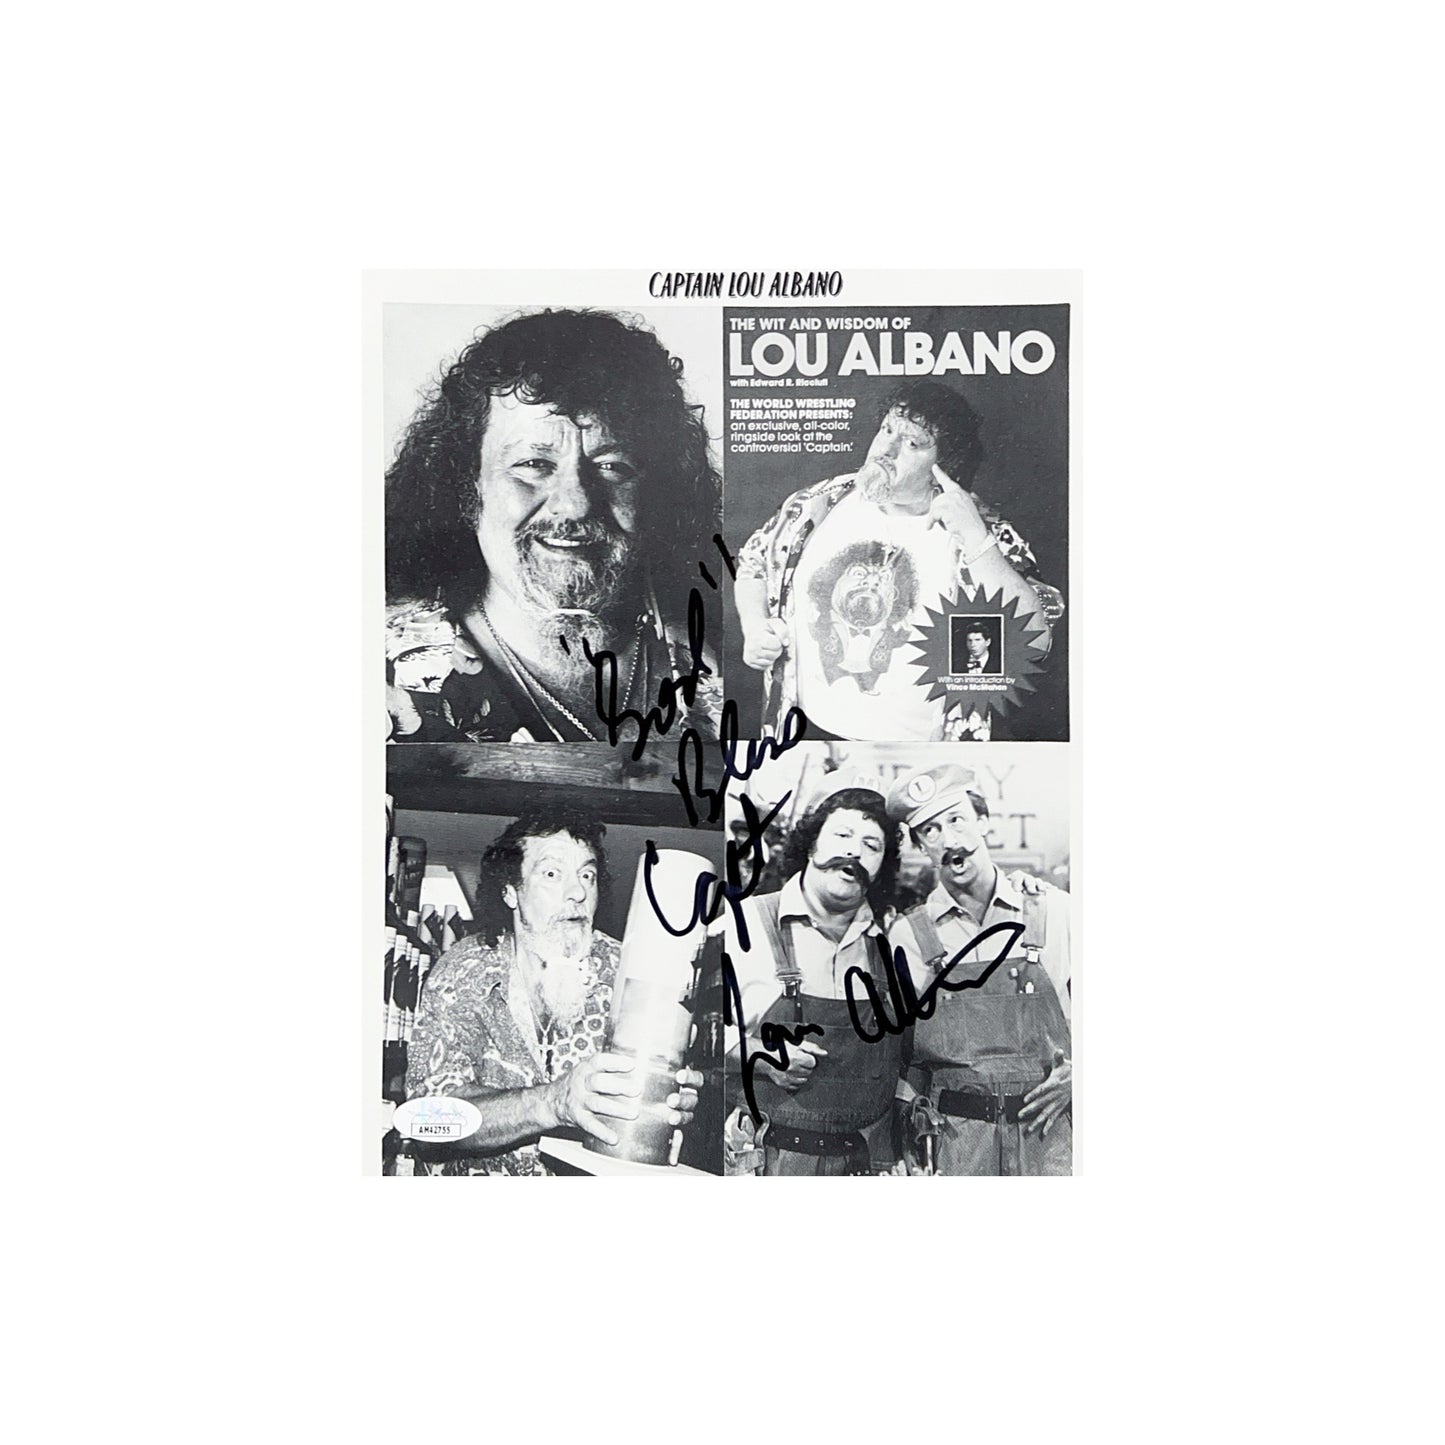 Lou Albano Autographed WWE 8x10 JSA